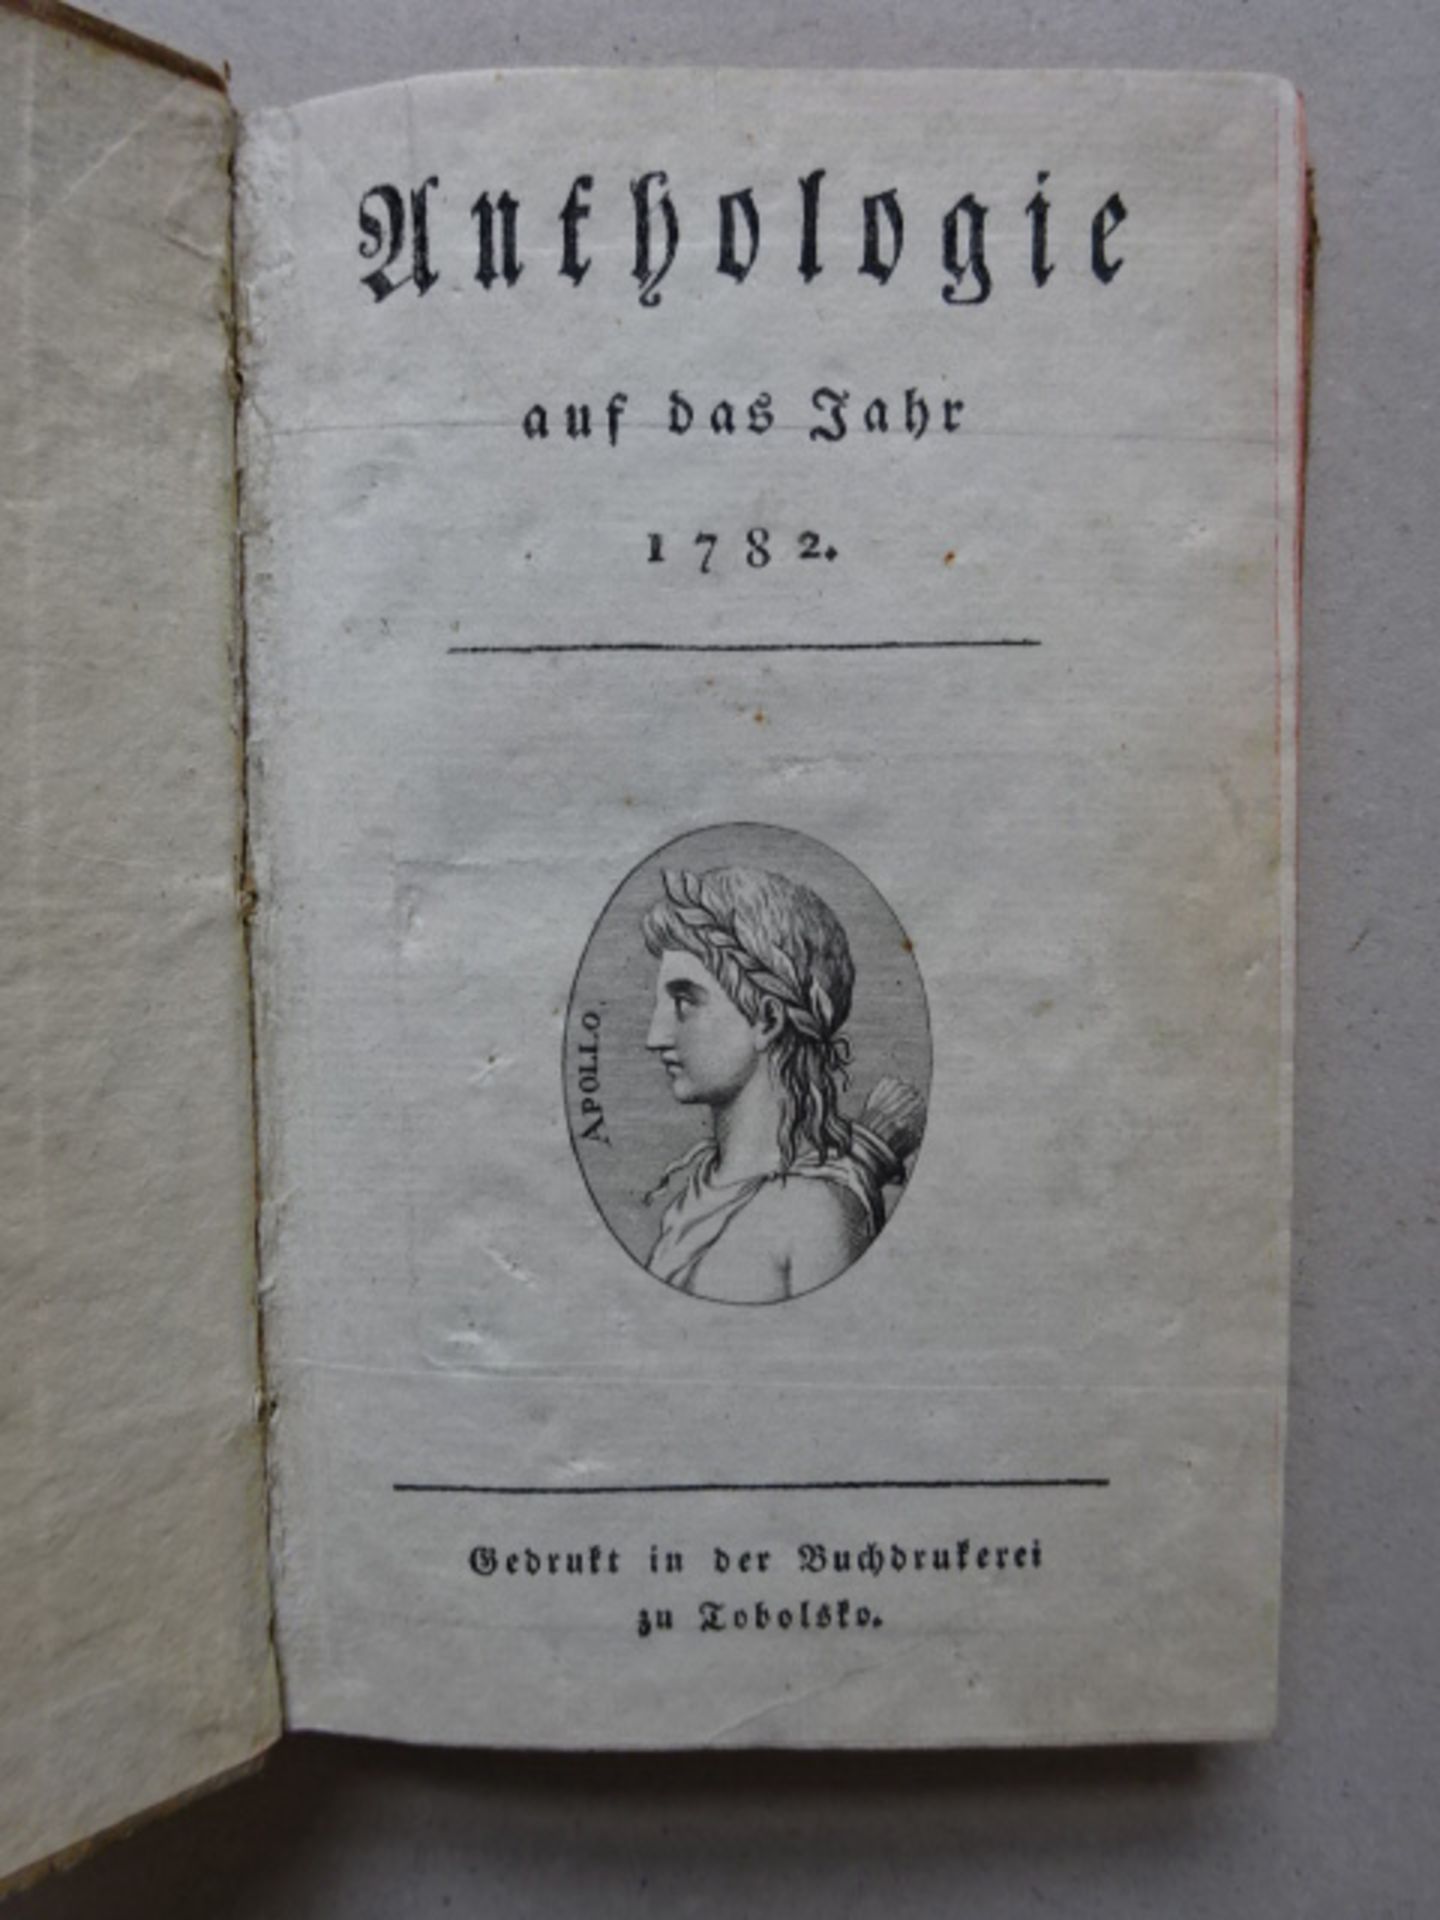 Schiller - Anthologie, 1782 - Image 2 of 6